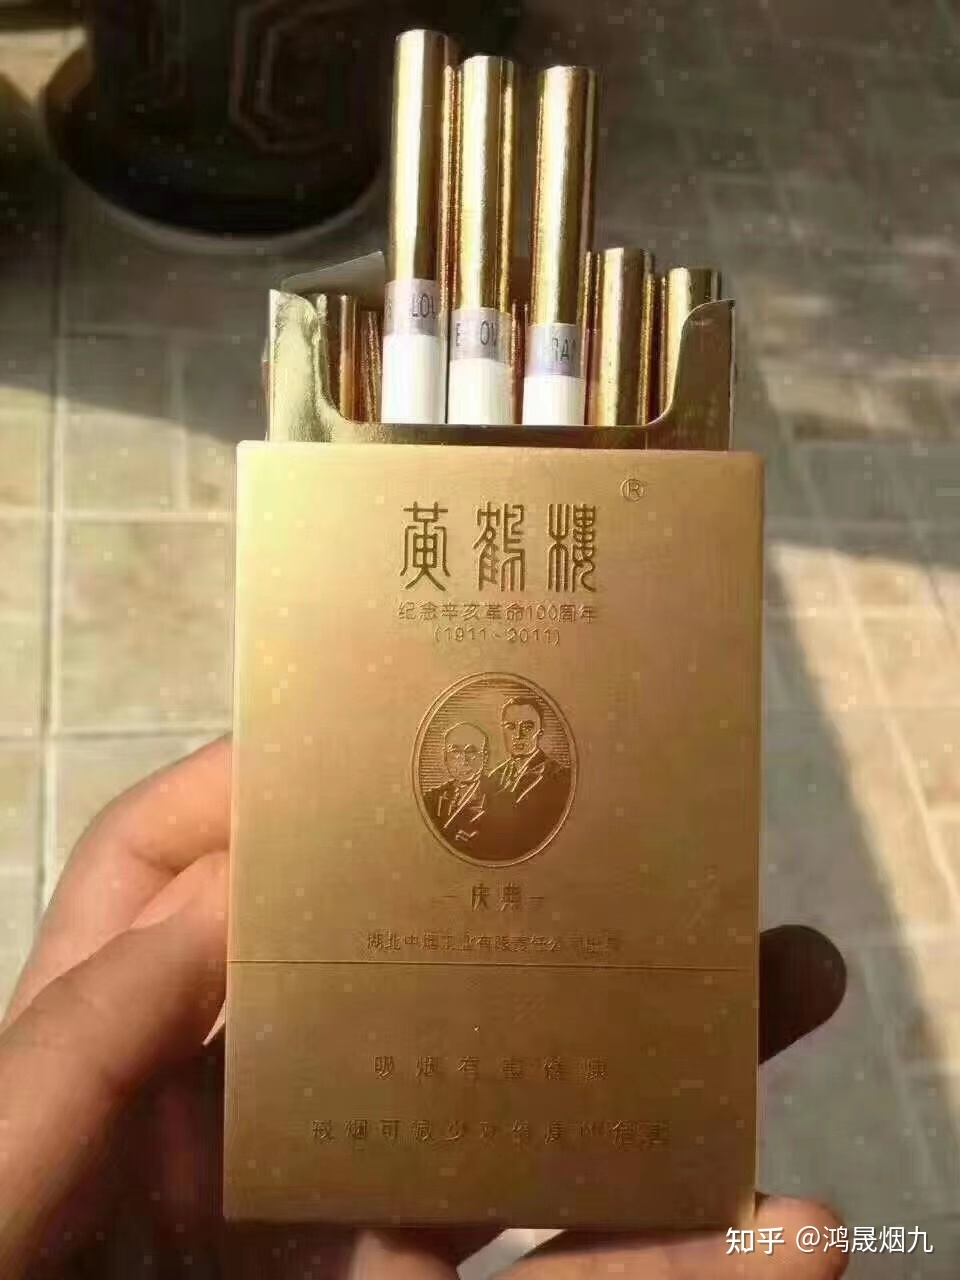 中国最贵的烟 一盒图片